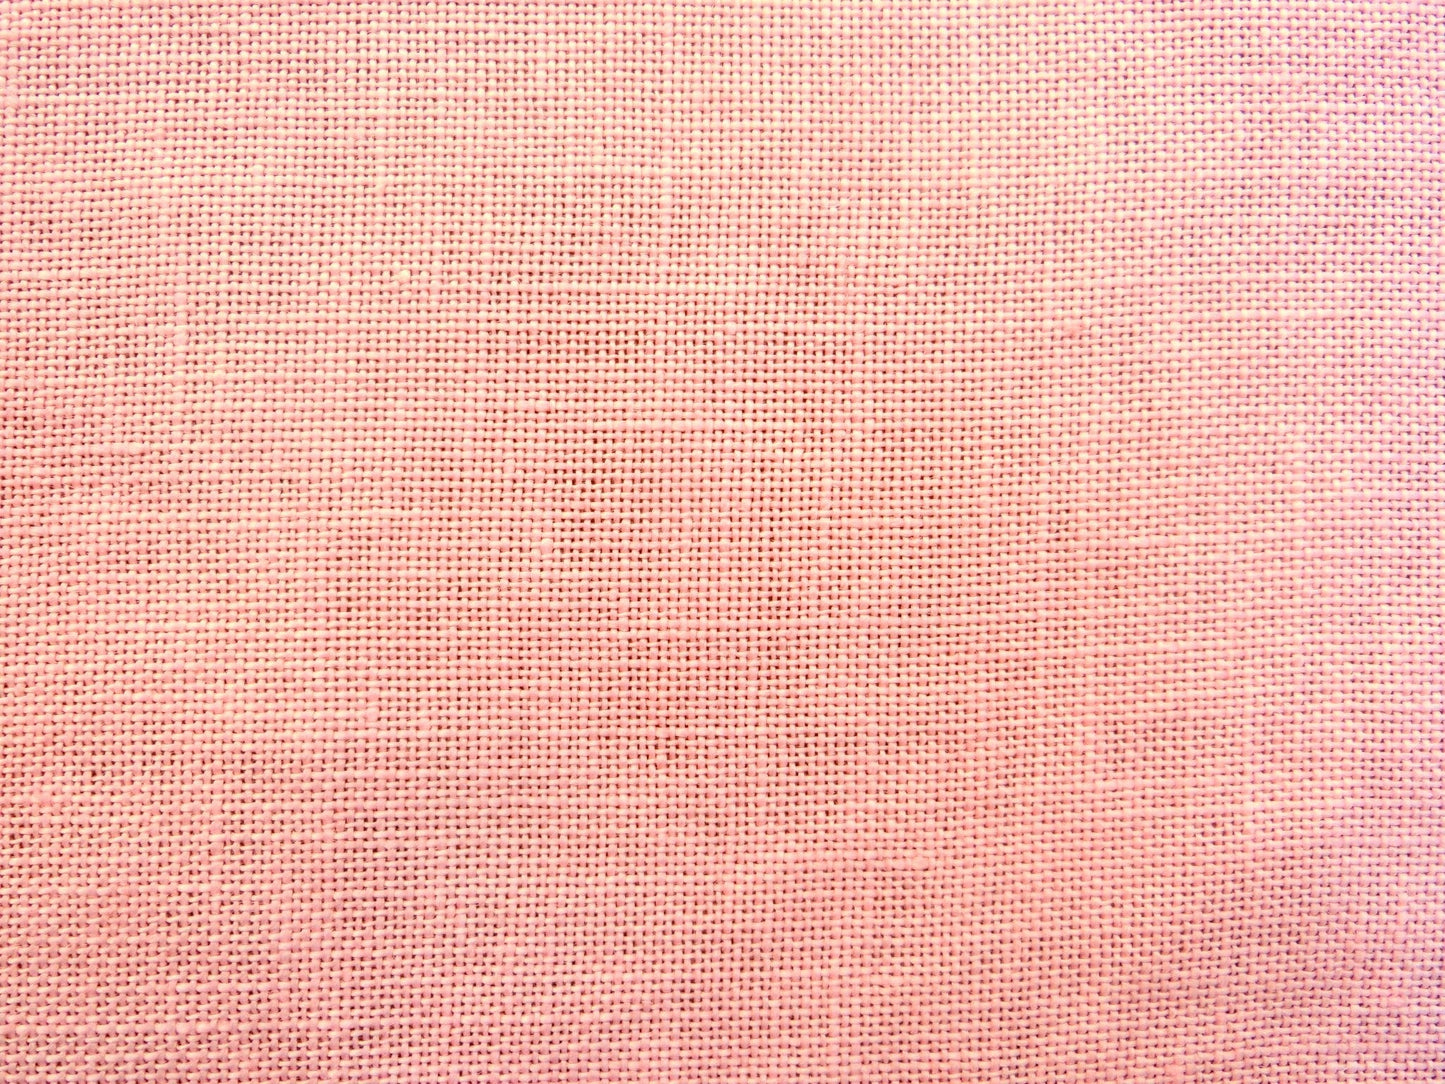 *シルキーピンク*　Silky Pink  32ct  19×25in.  47×65cm